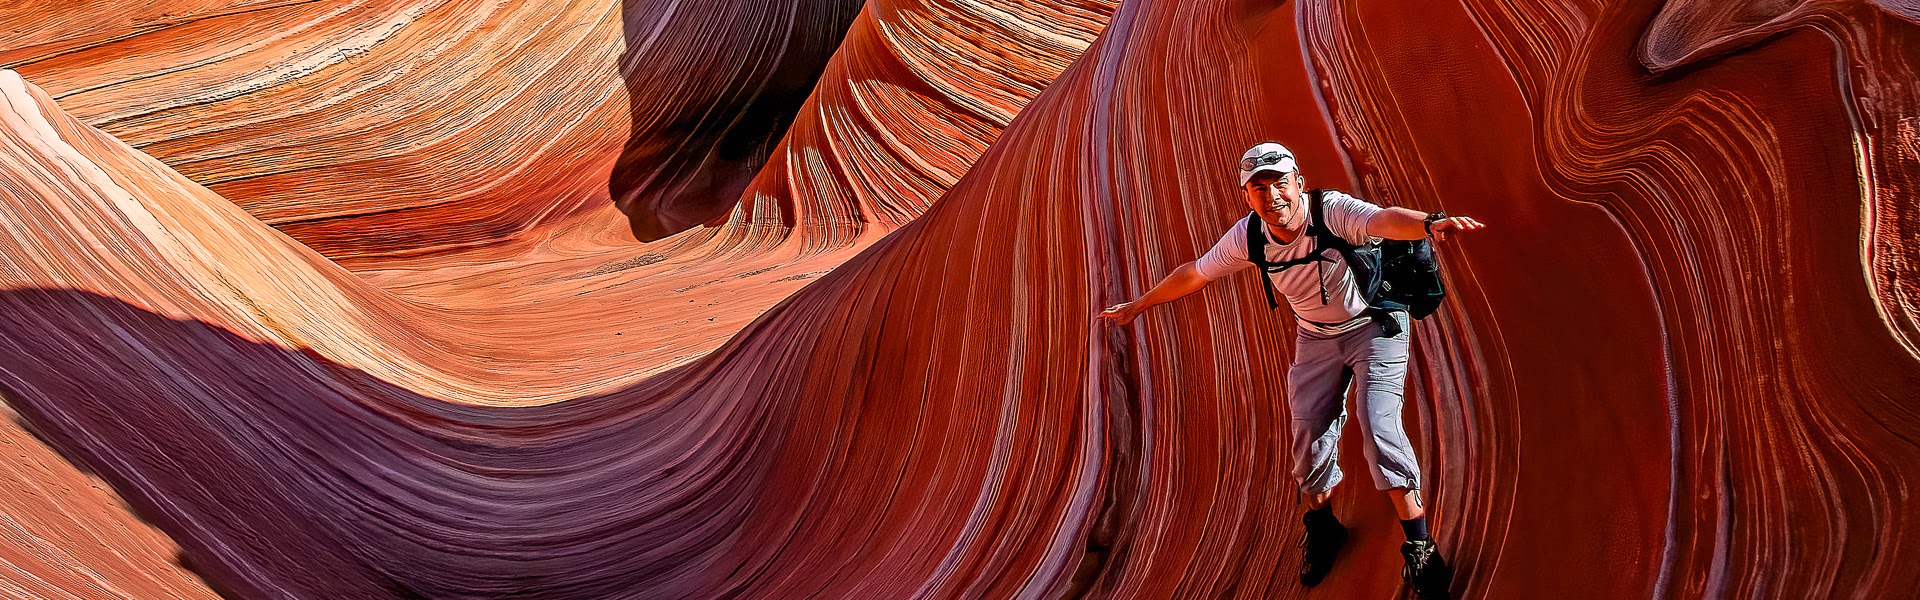 Die Welle reiten im Wave Paria Canyon Nationalpark in den USA |  Dirk Stamm / Chamleon